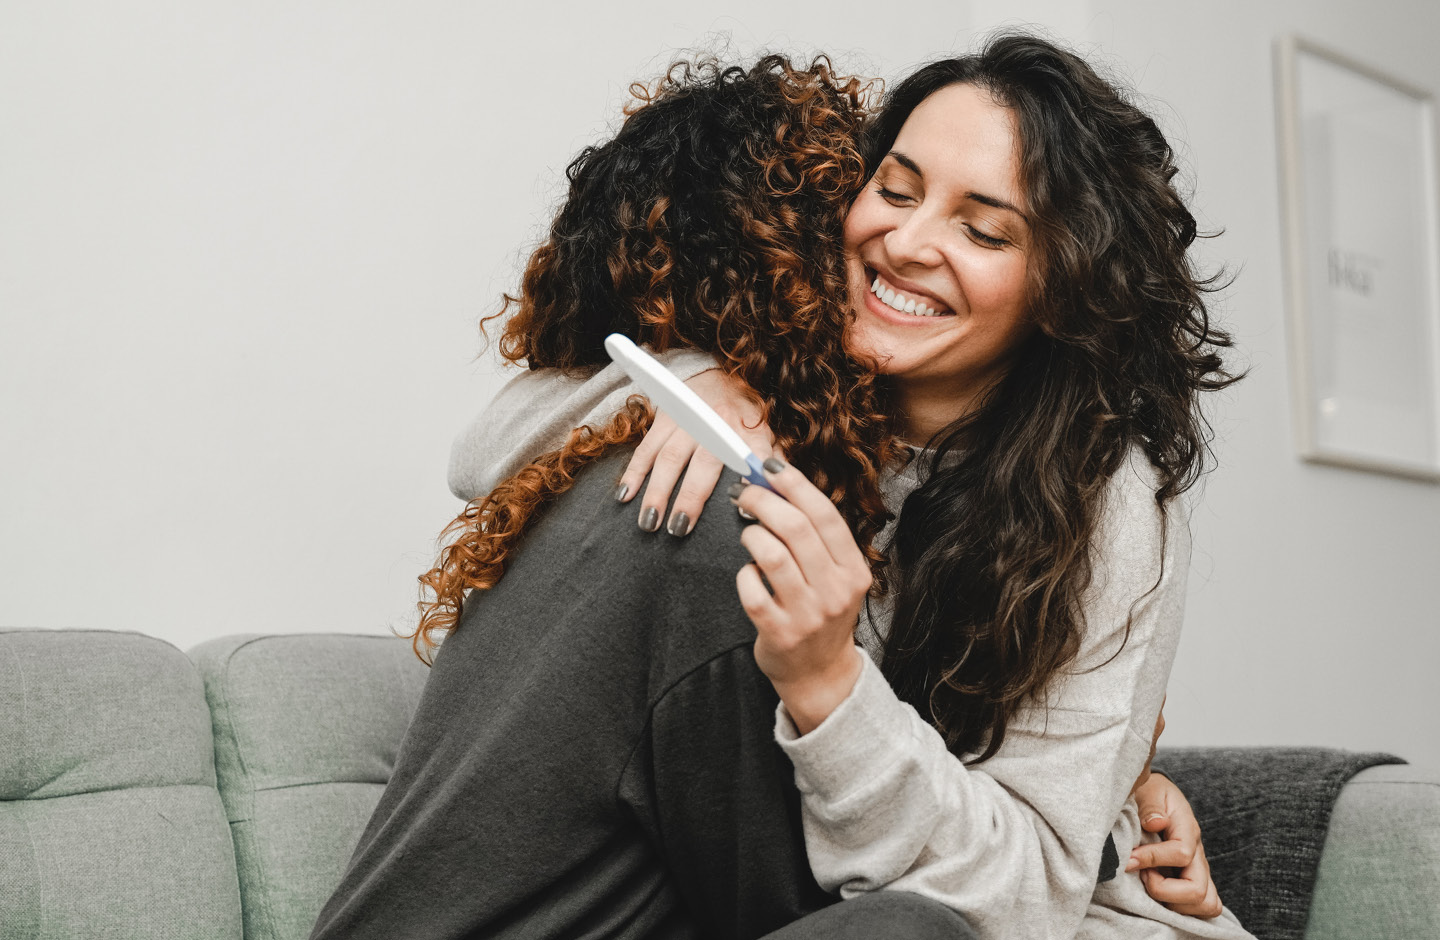 Frau mit positivem Schwangerschaftstest umarmt Freundin auf Sofa